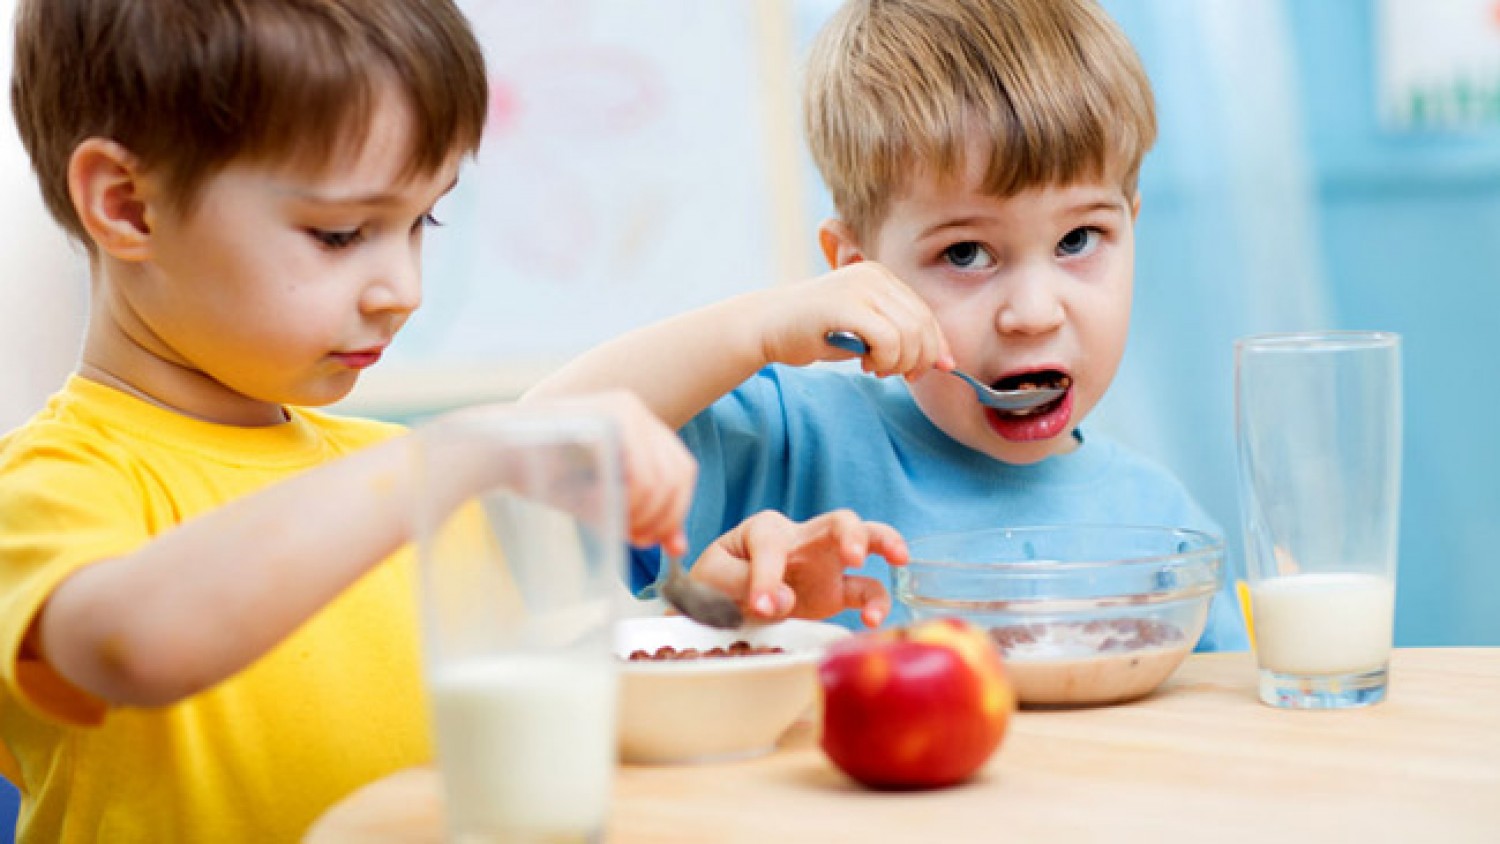 ماذا يجب أن يأكل الطفل في وجبة الإفطار؟